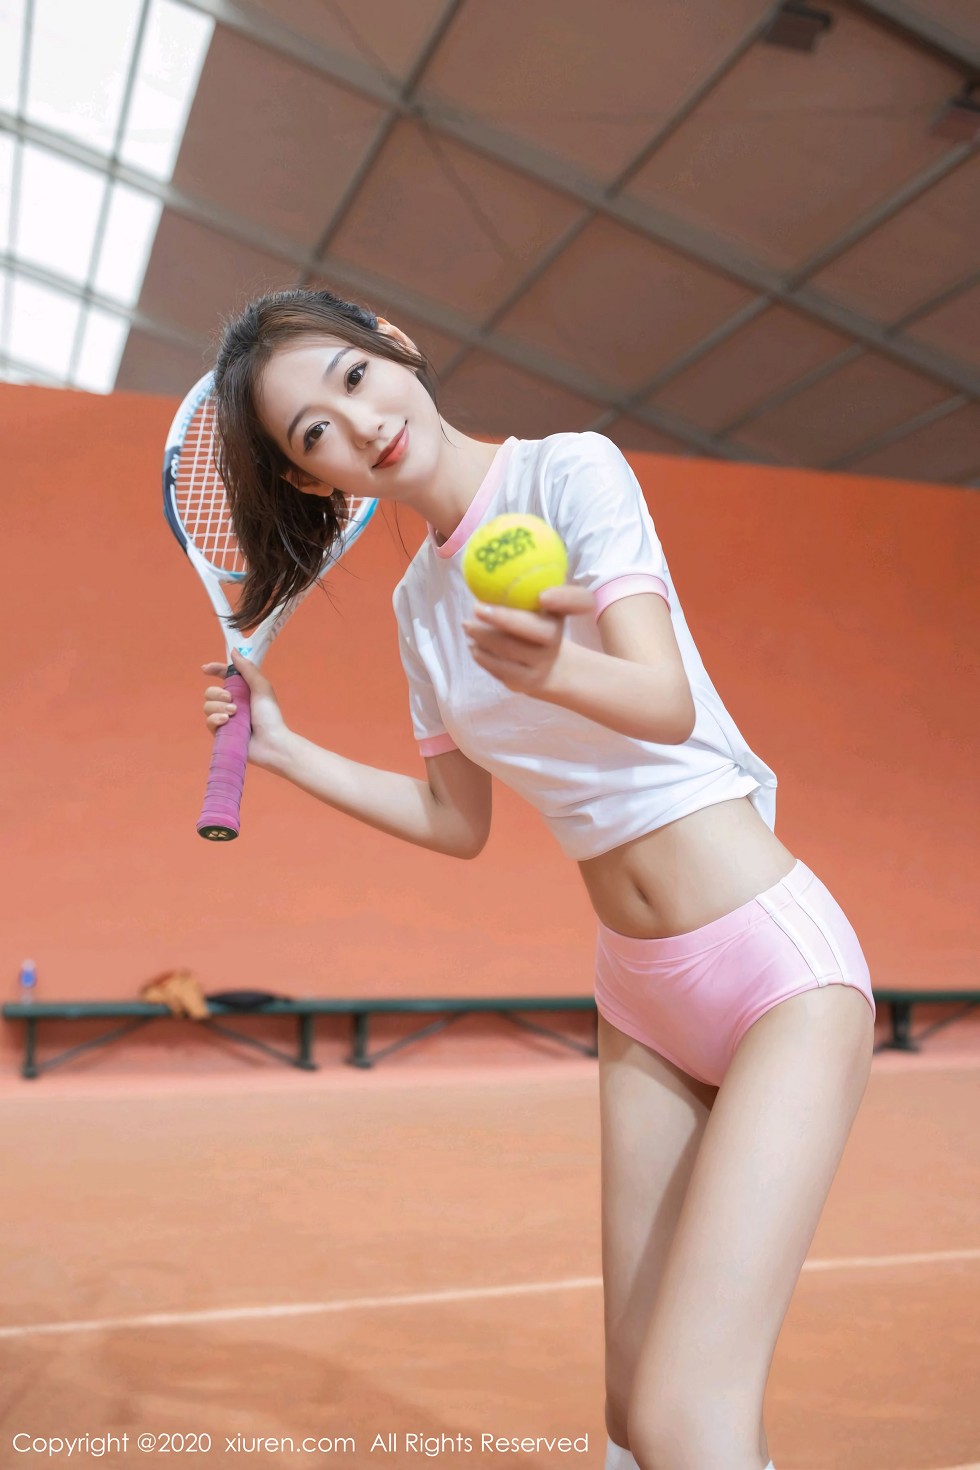 嫩模唐安琪网球少女主题清纯粉色运动装秀完美身材甜美迷人写真